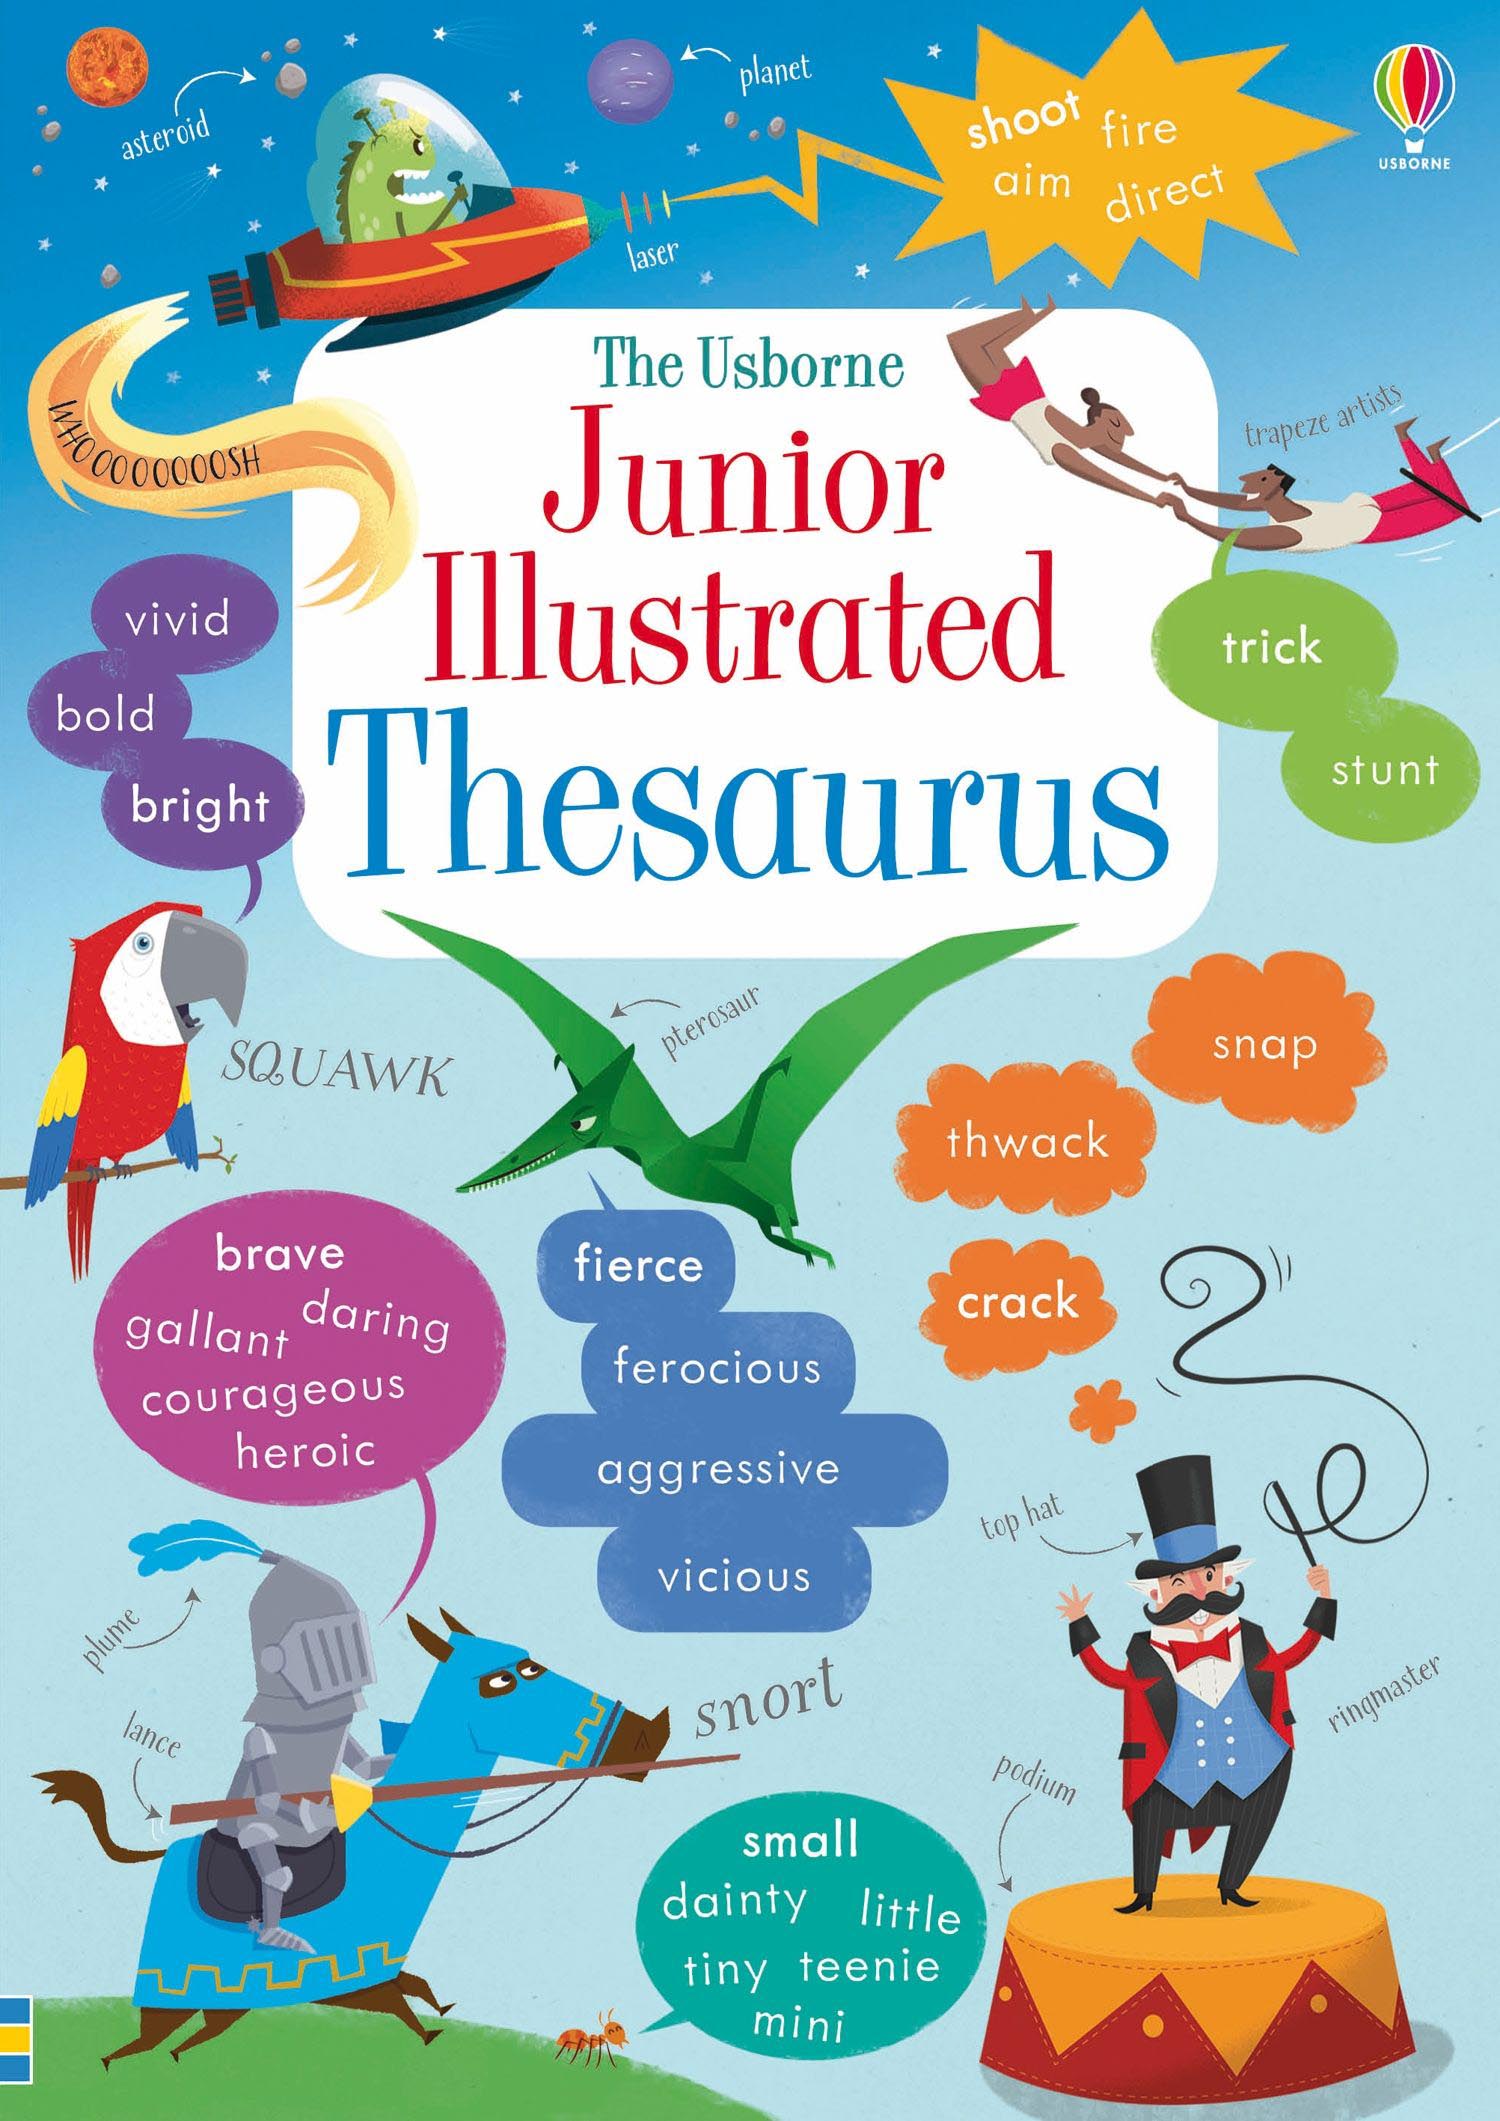 The Usborne Junior Illustrated Thesaurus